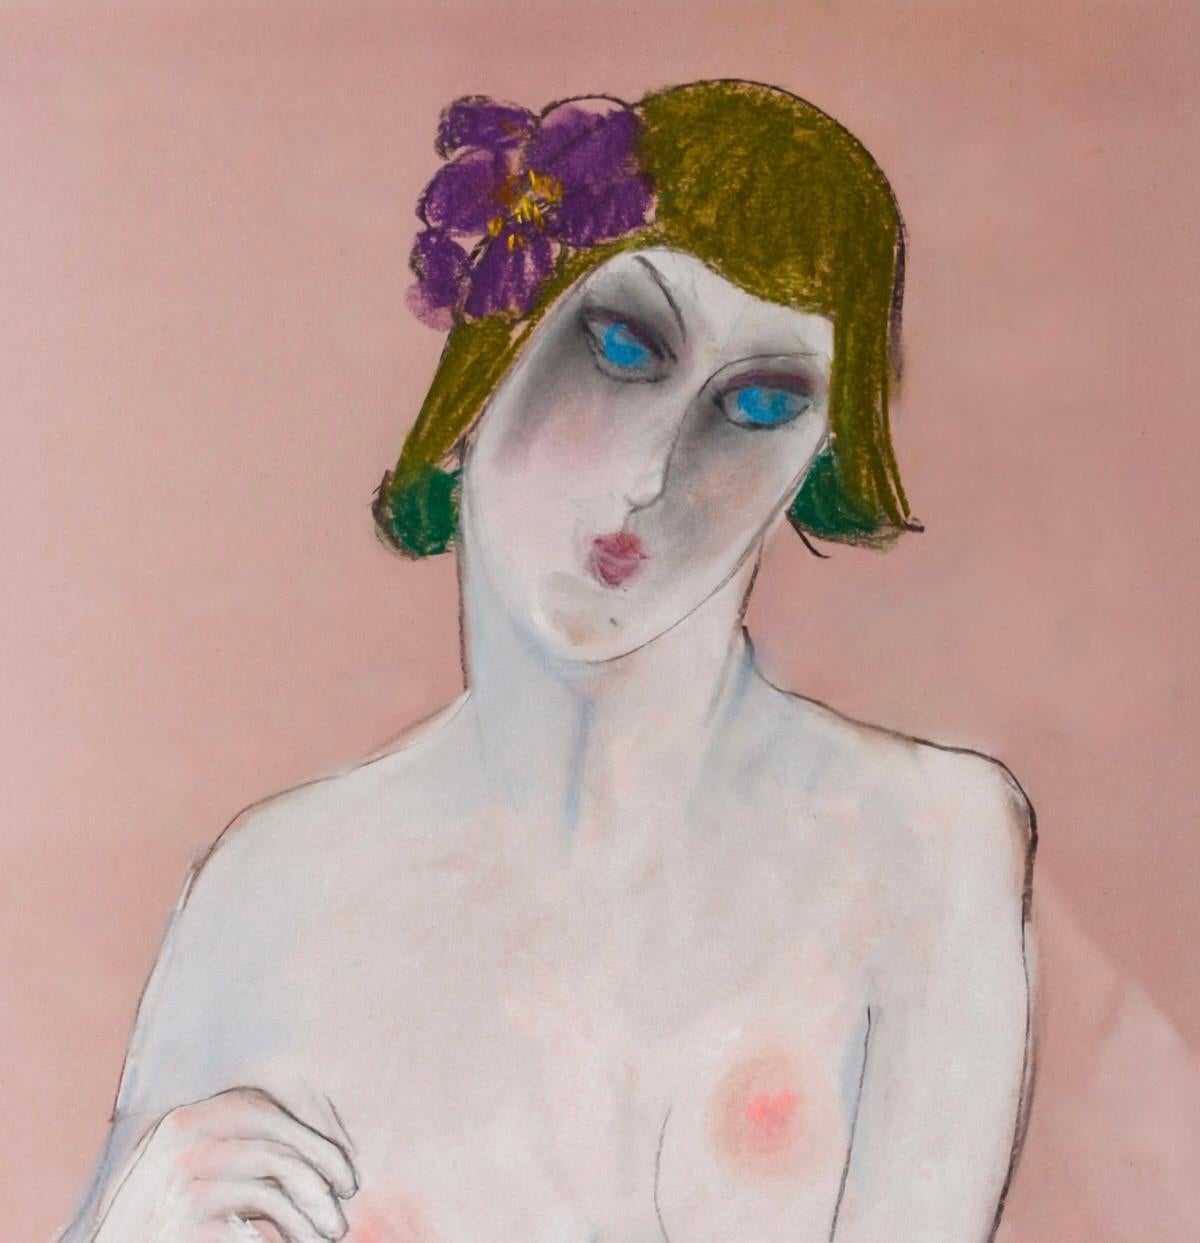 Pastel à l'huile d'Anna Sylverberg, faisant partie d'une série de nus, monogrammé AS, 1962.
Représentation d'une femme nue assise dans une position langoureuse, le visage maquillé et les cheveux châtains ornés d'une fleur mauve et de boucles